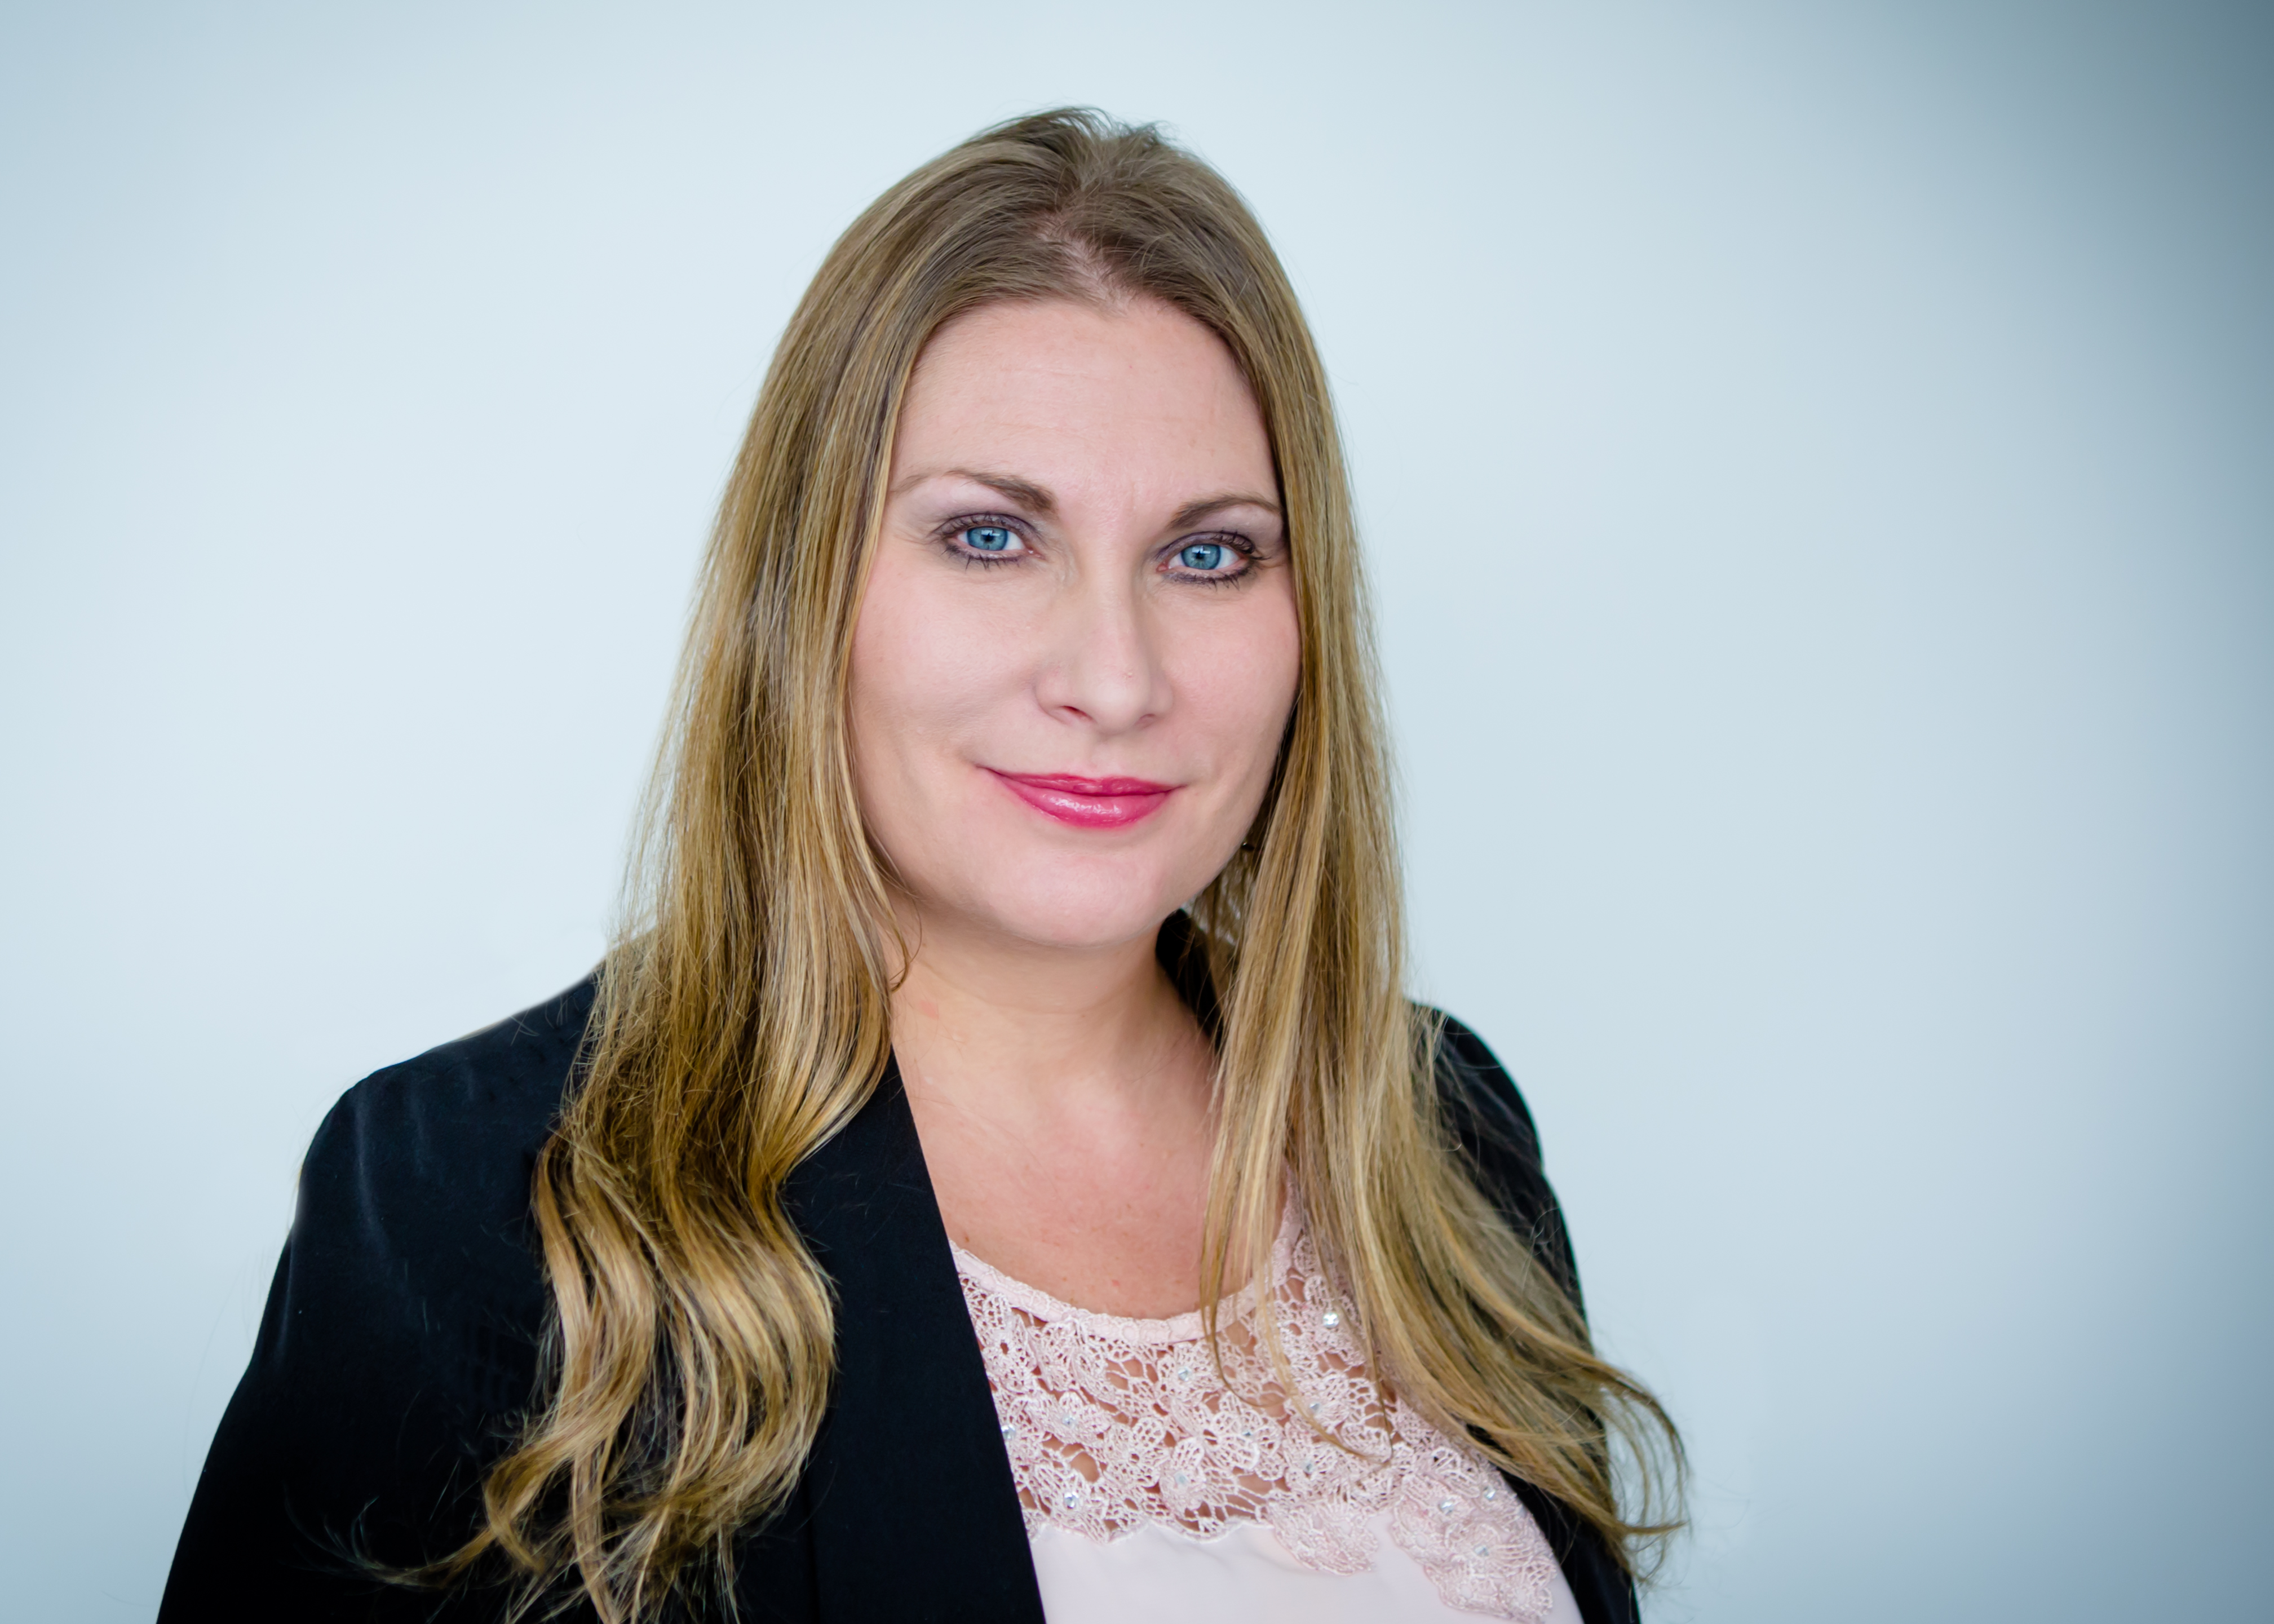 Jaylene Kunze Joins Urbint as Chief Financial Officer